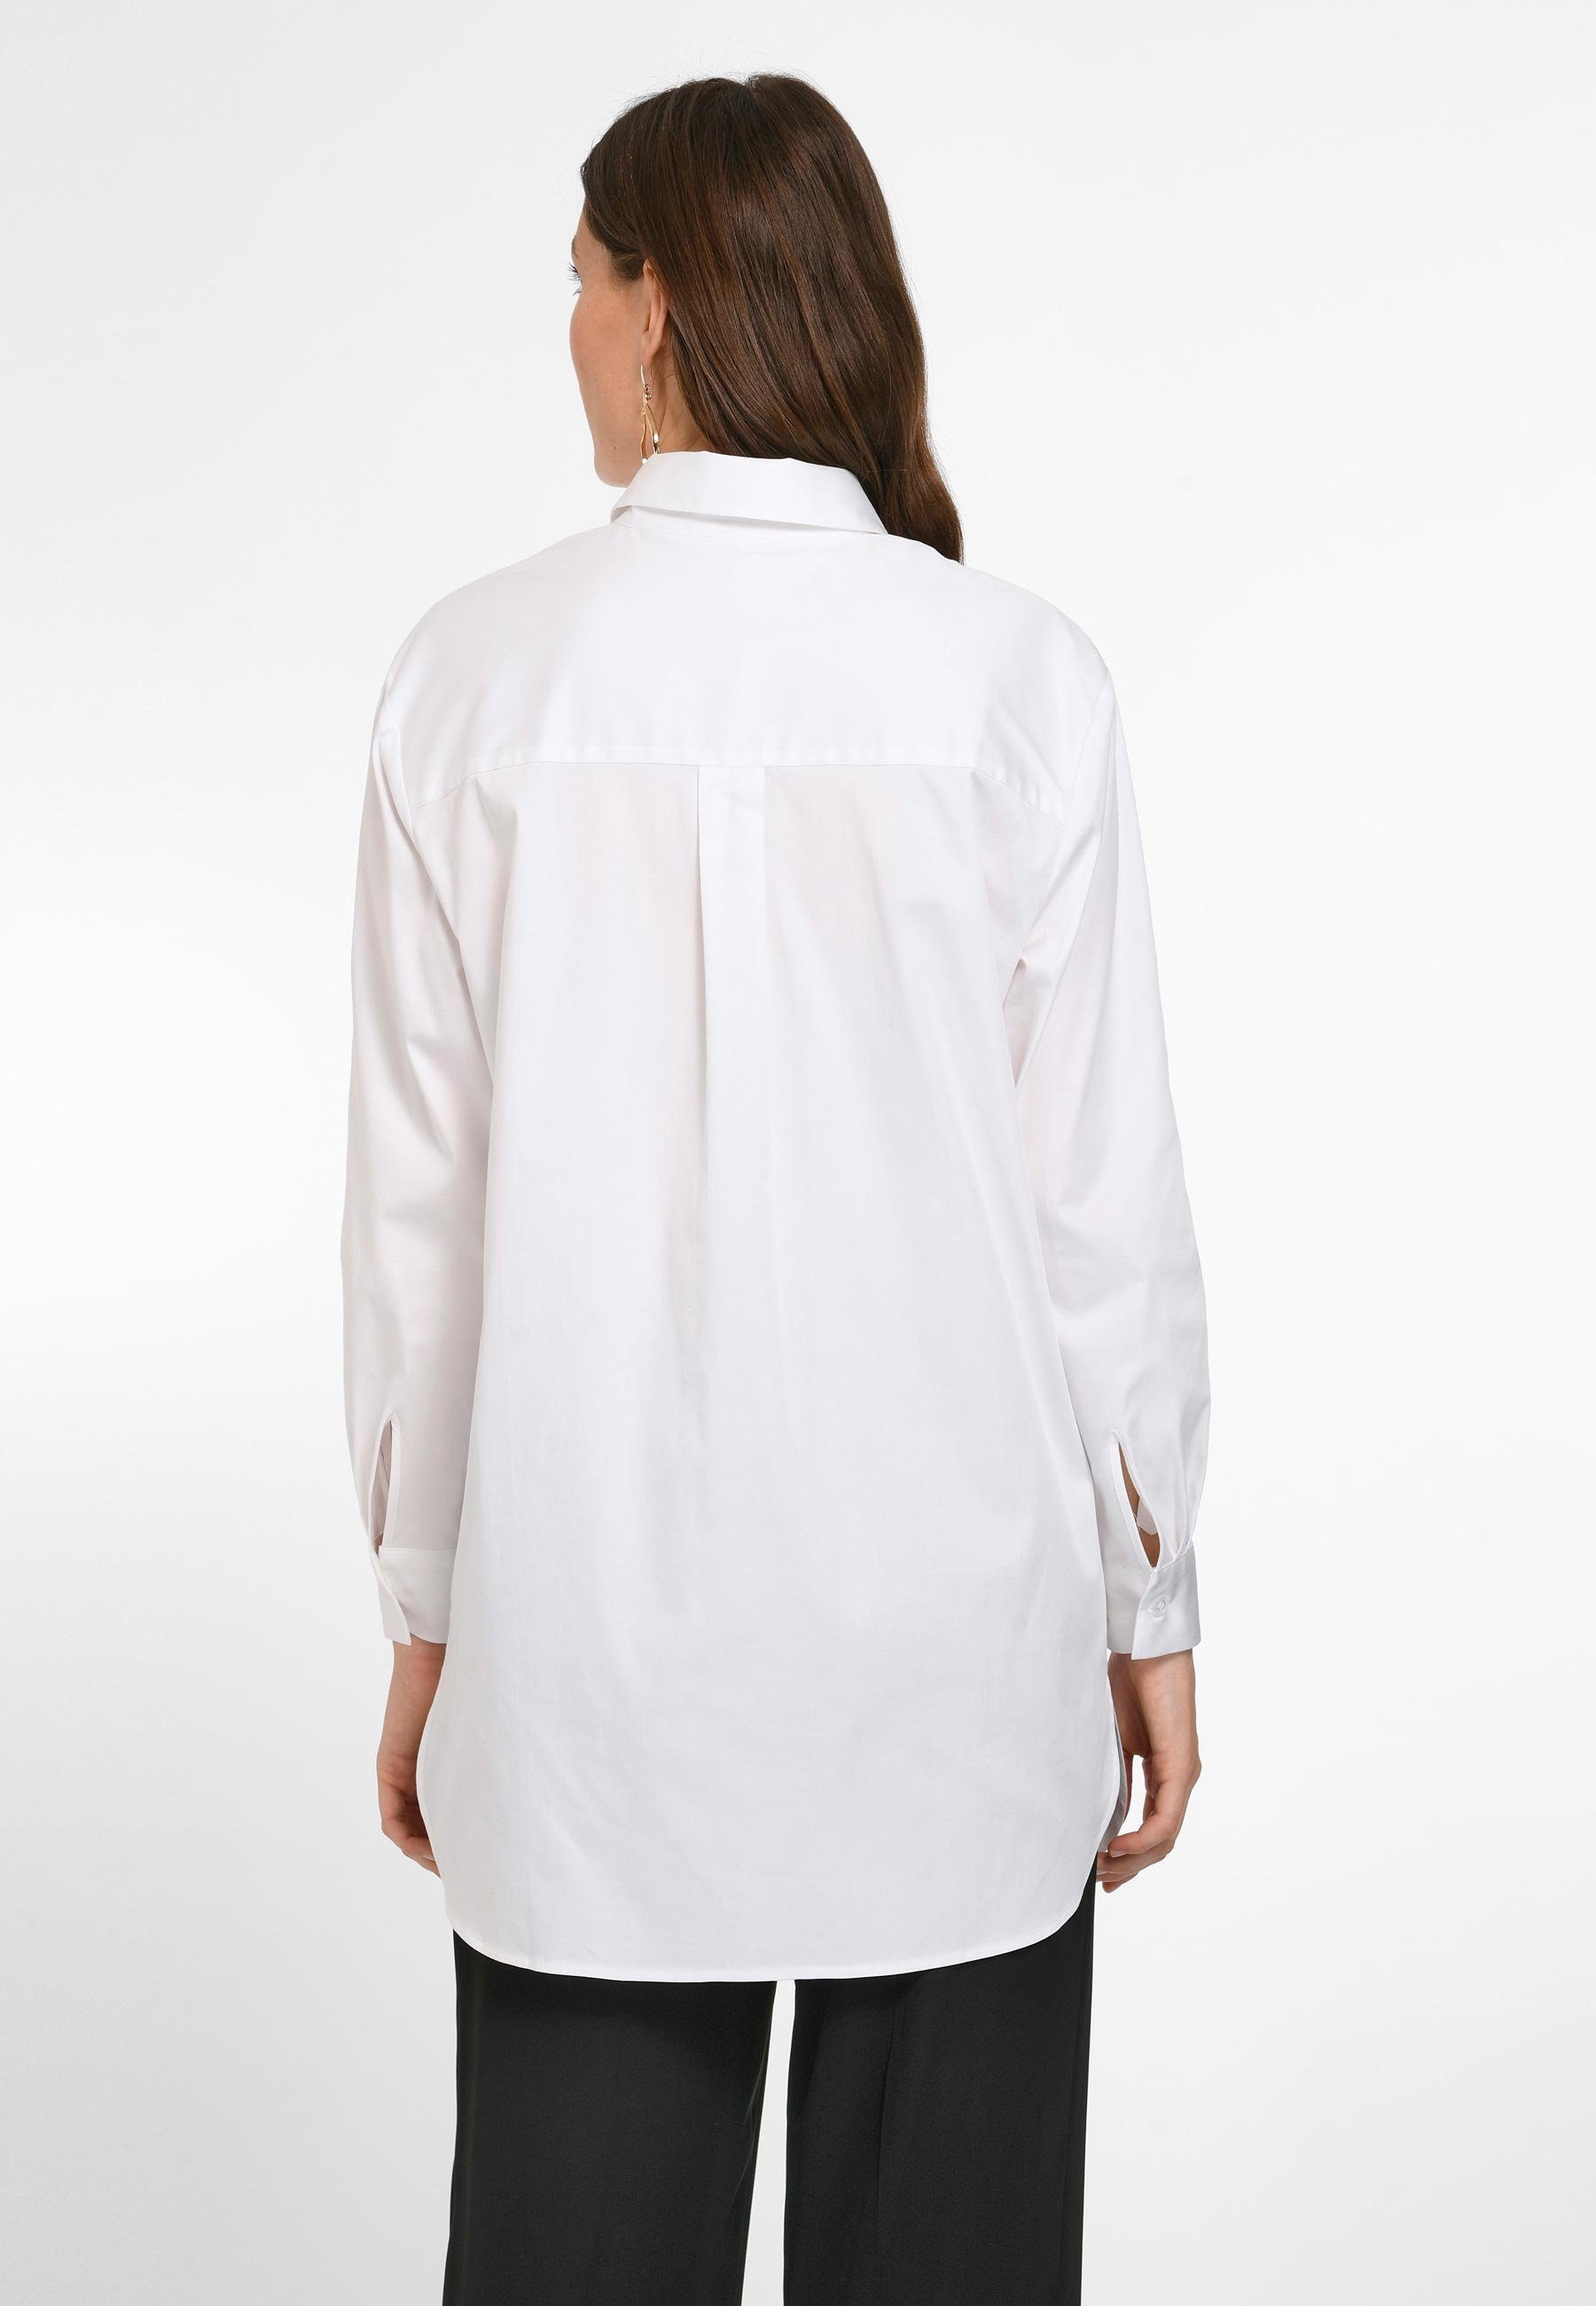 mit modernem Klassische Emilia weiss Design Bluse Cotton Lay